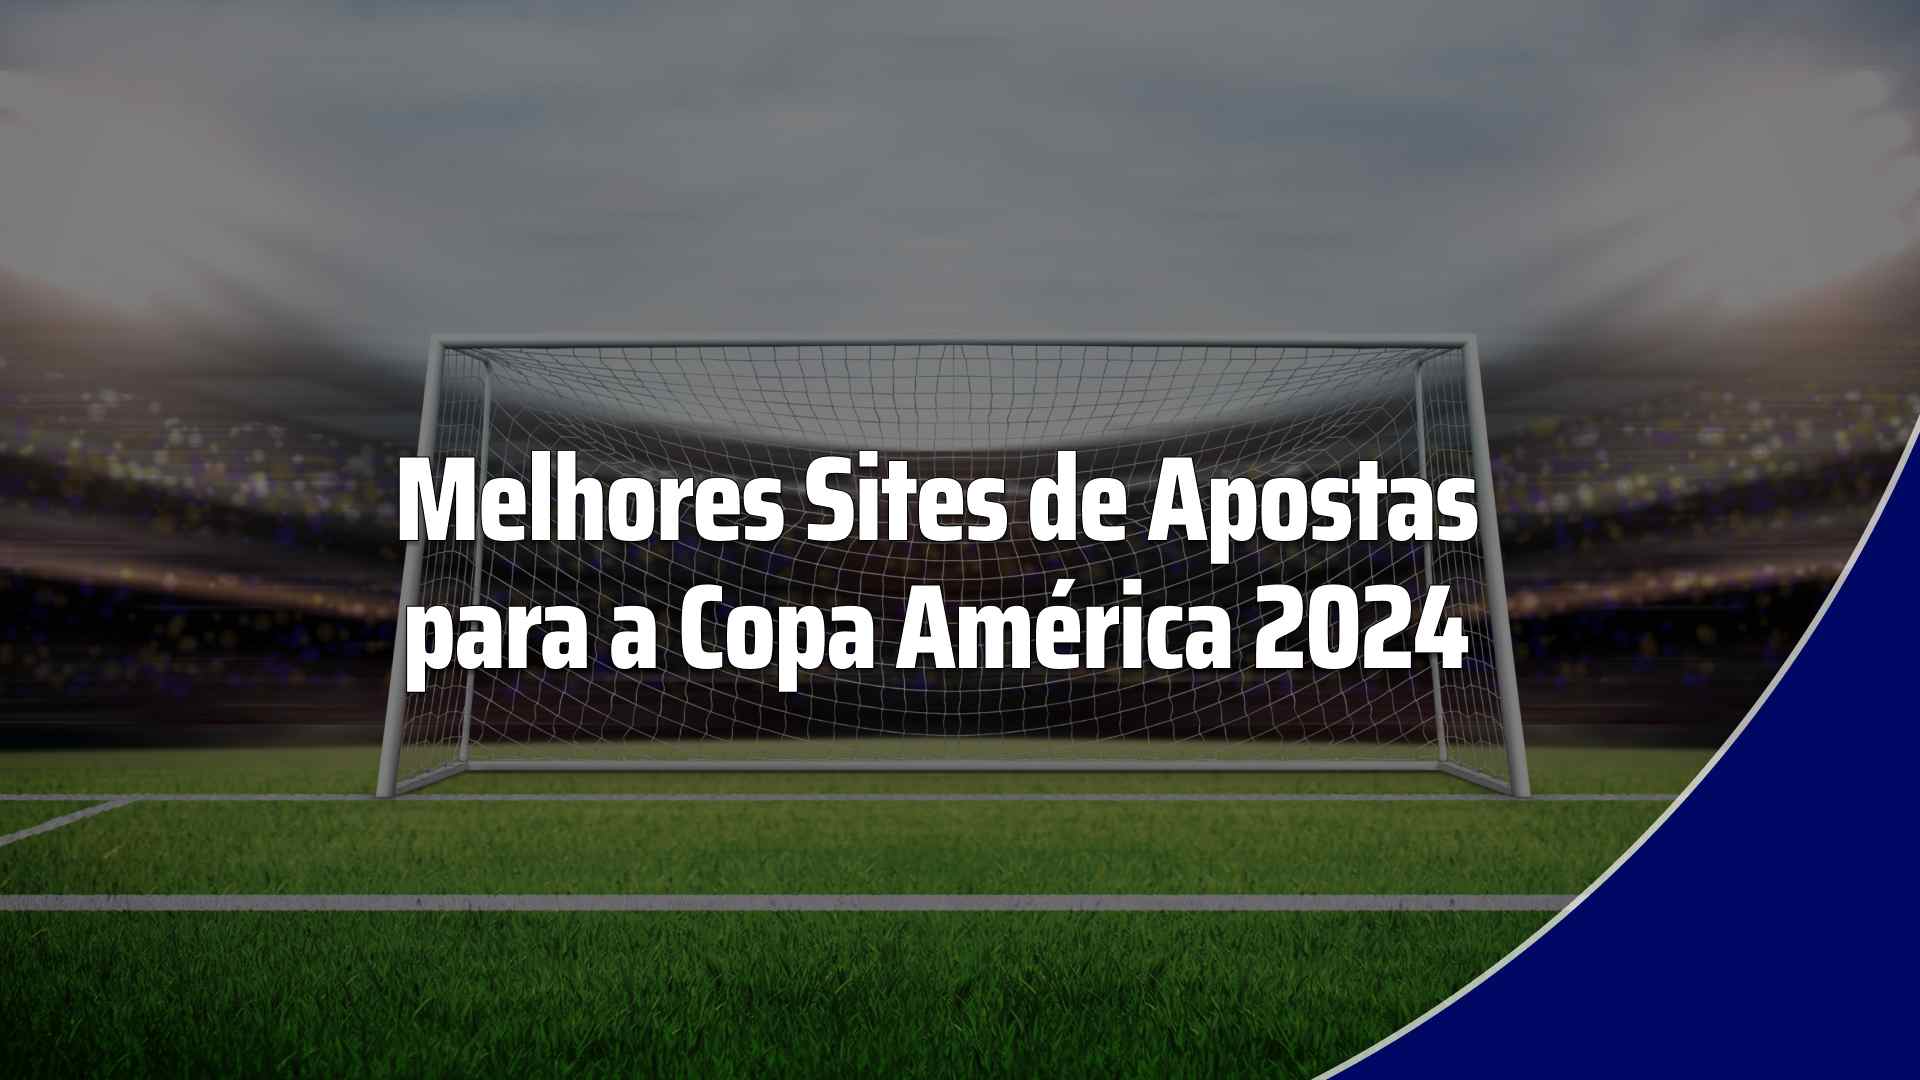 Melhores sites de apostas para a Copa Amrica 2024